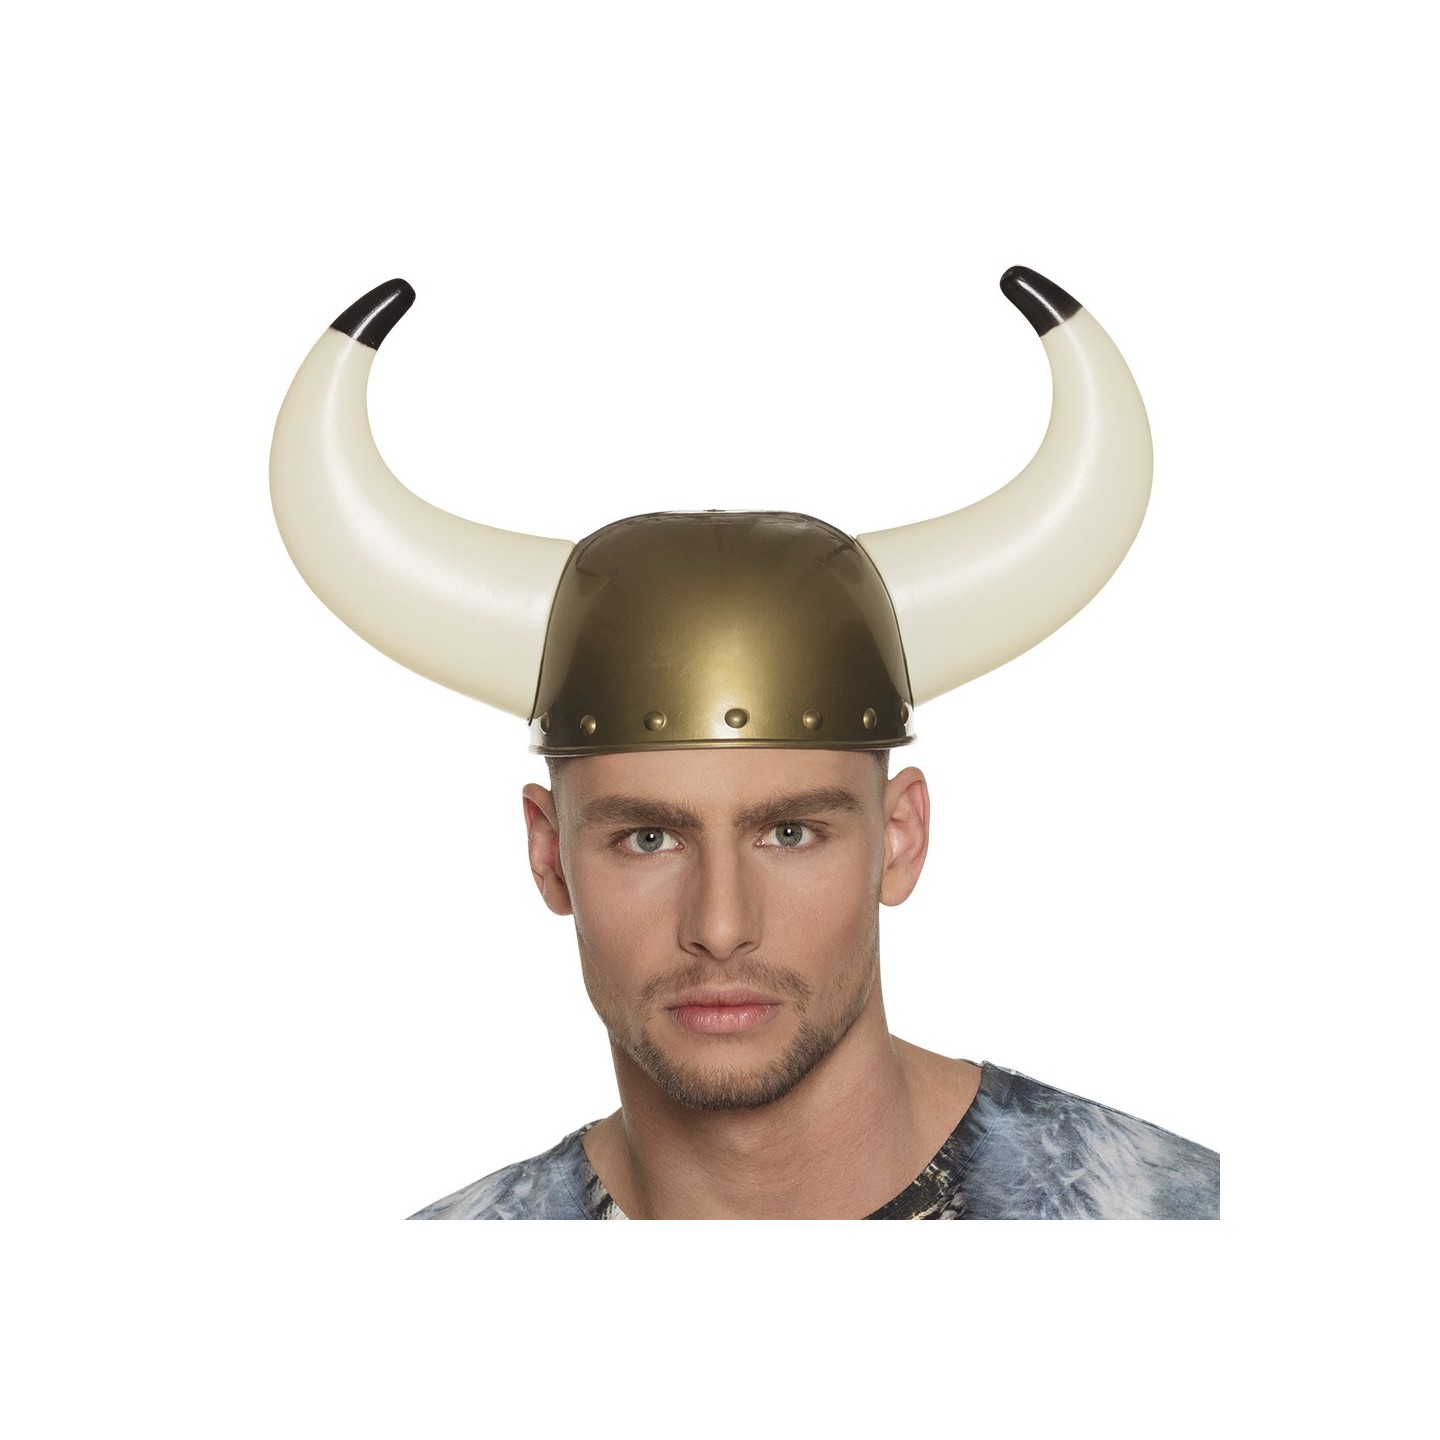 viking helm met horens goedkoop